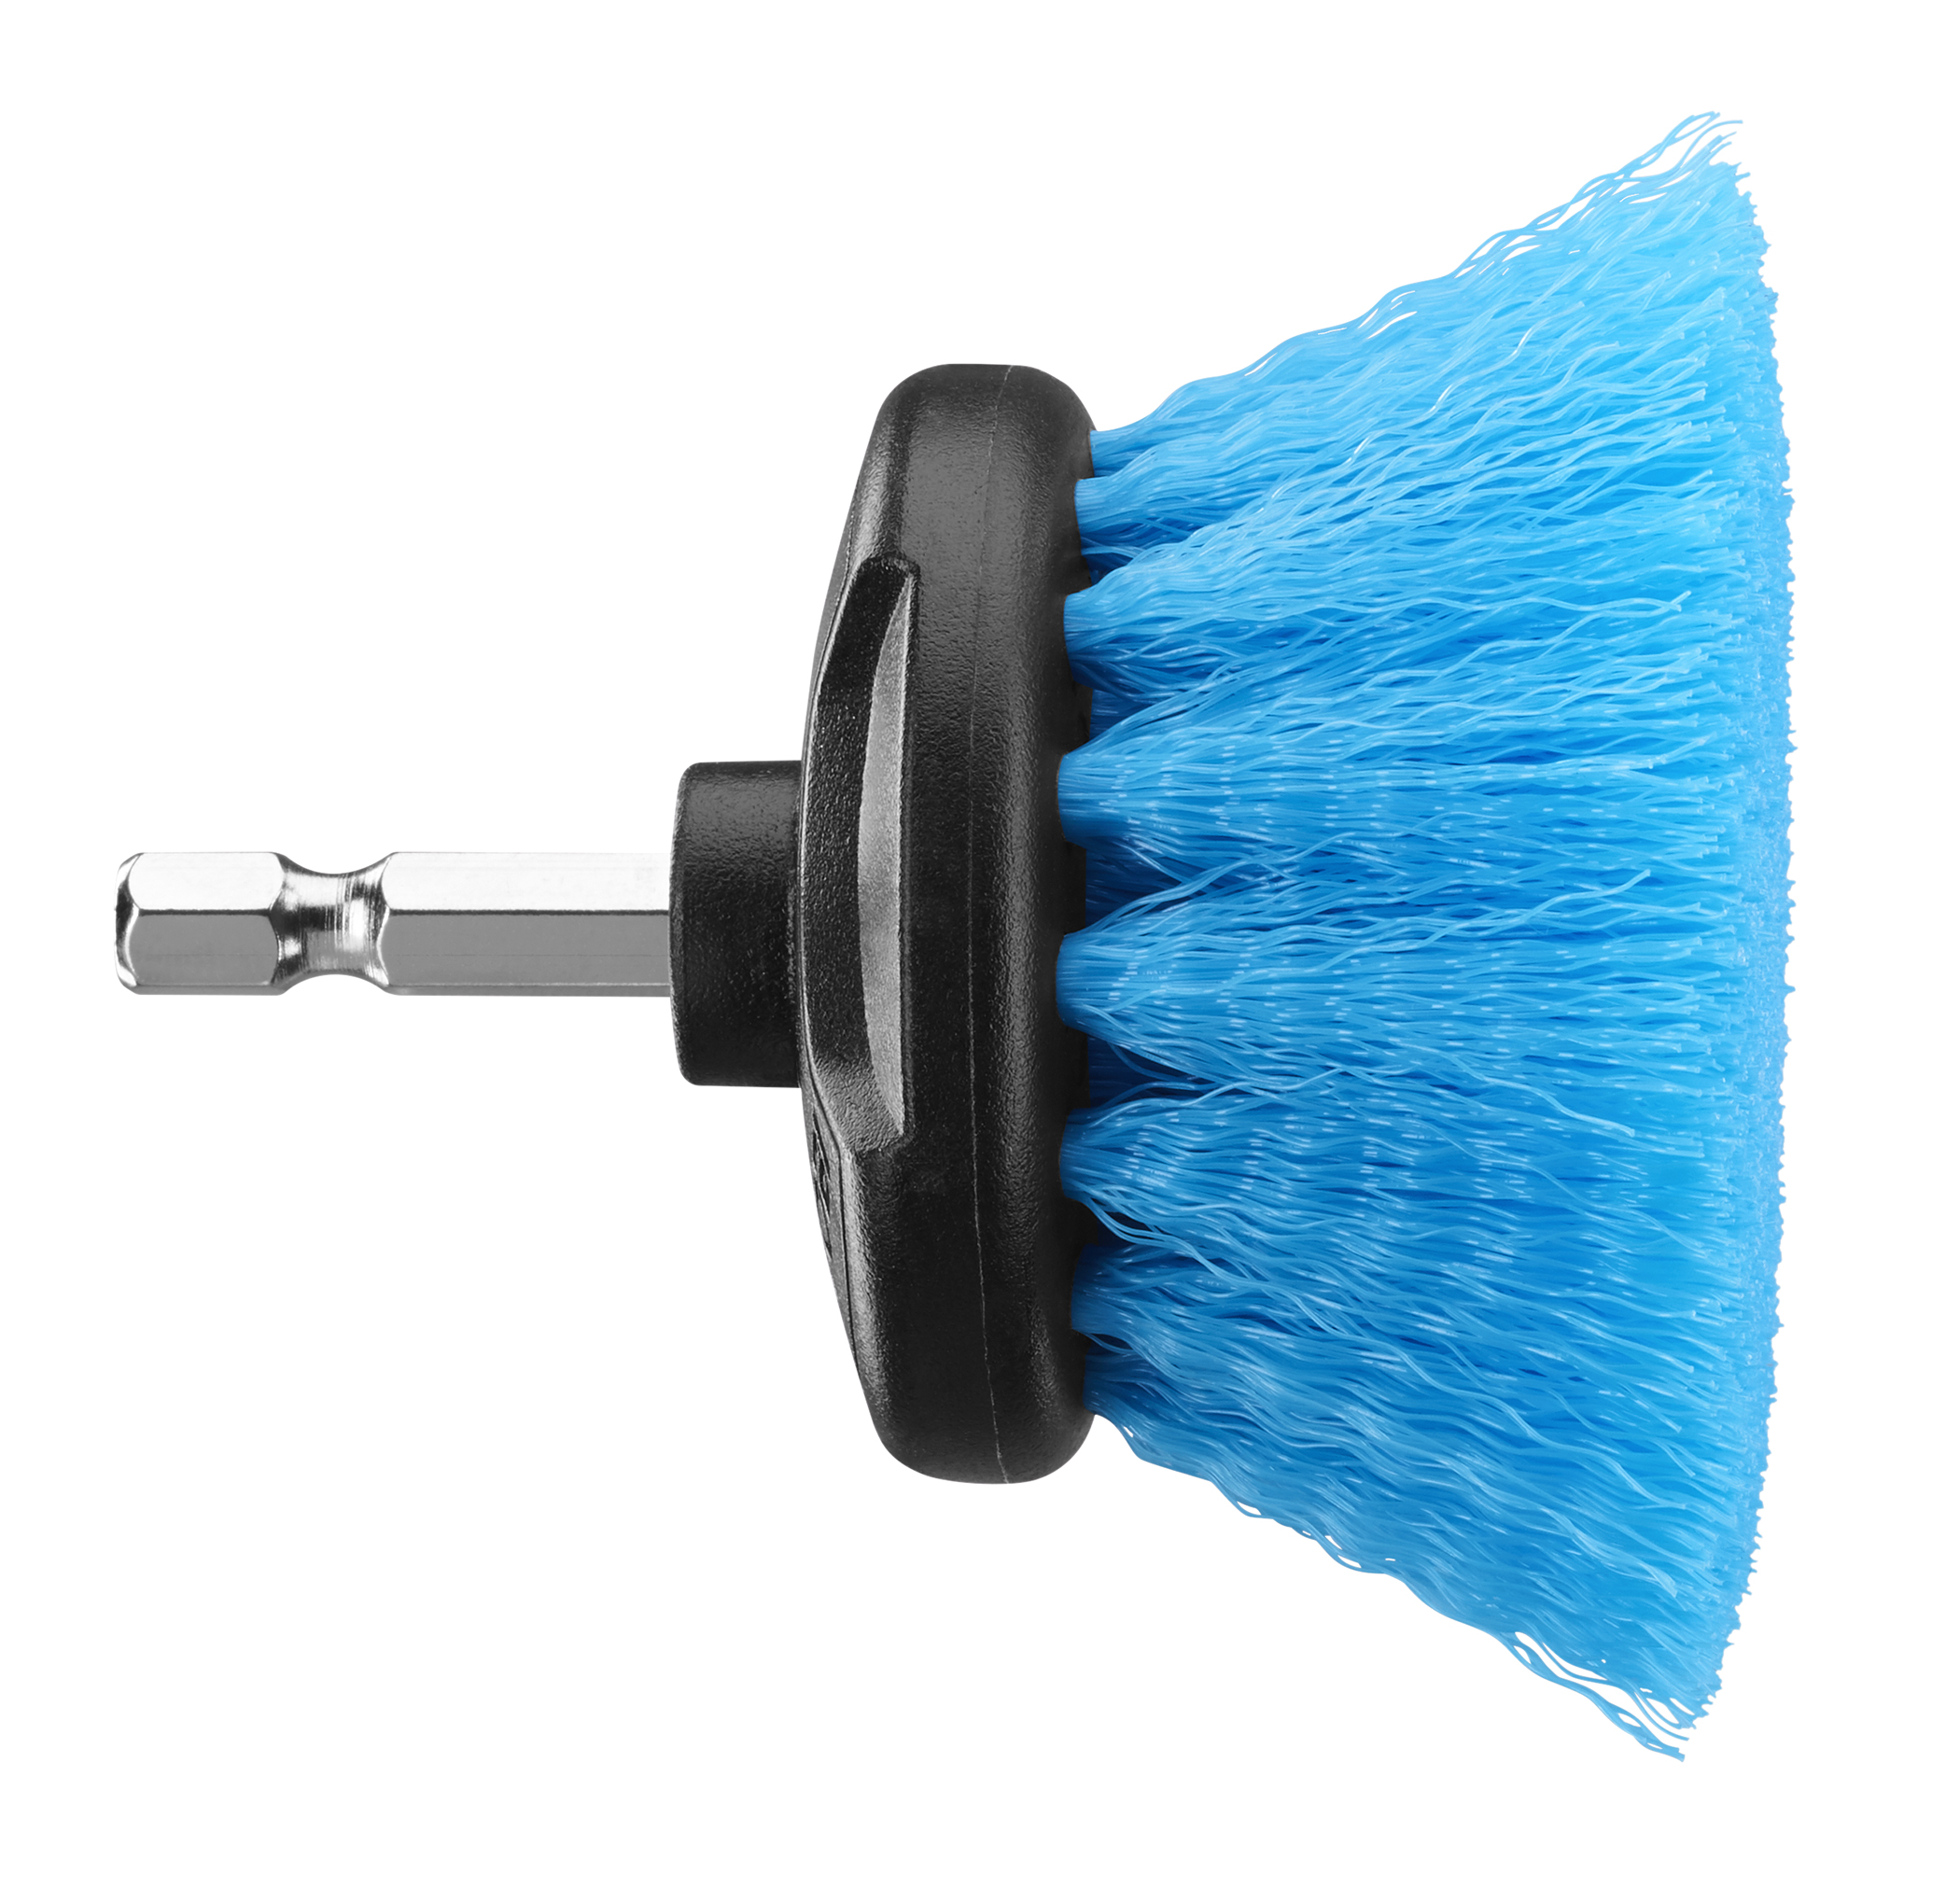 RYOBI Medium Bristle Brush Multi-Purpose Cleaning Kit (2-Piece